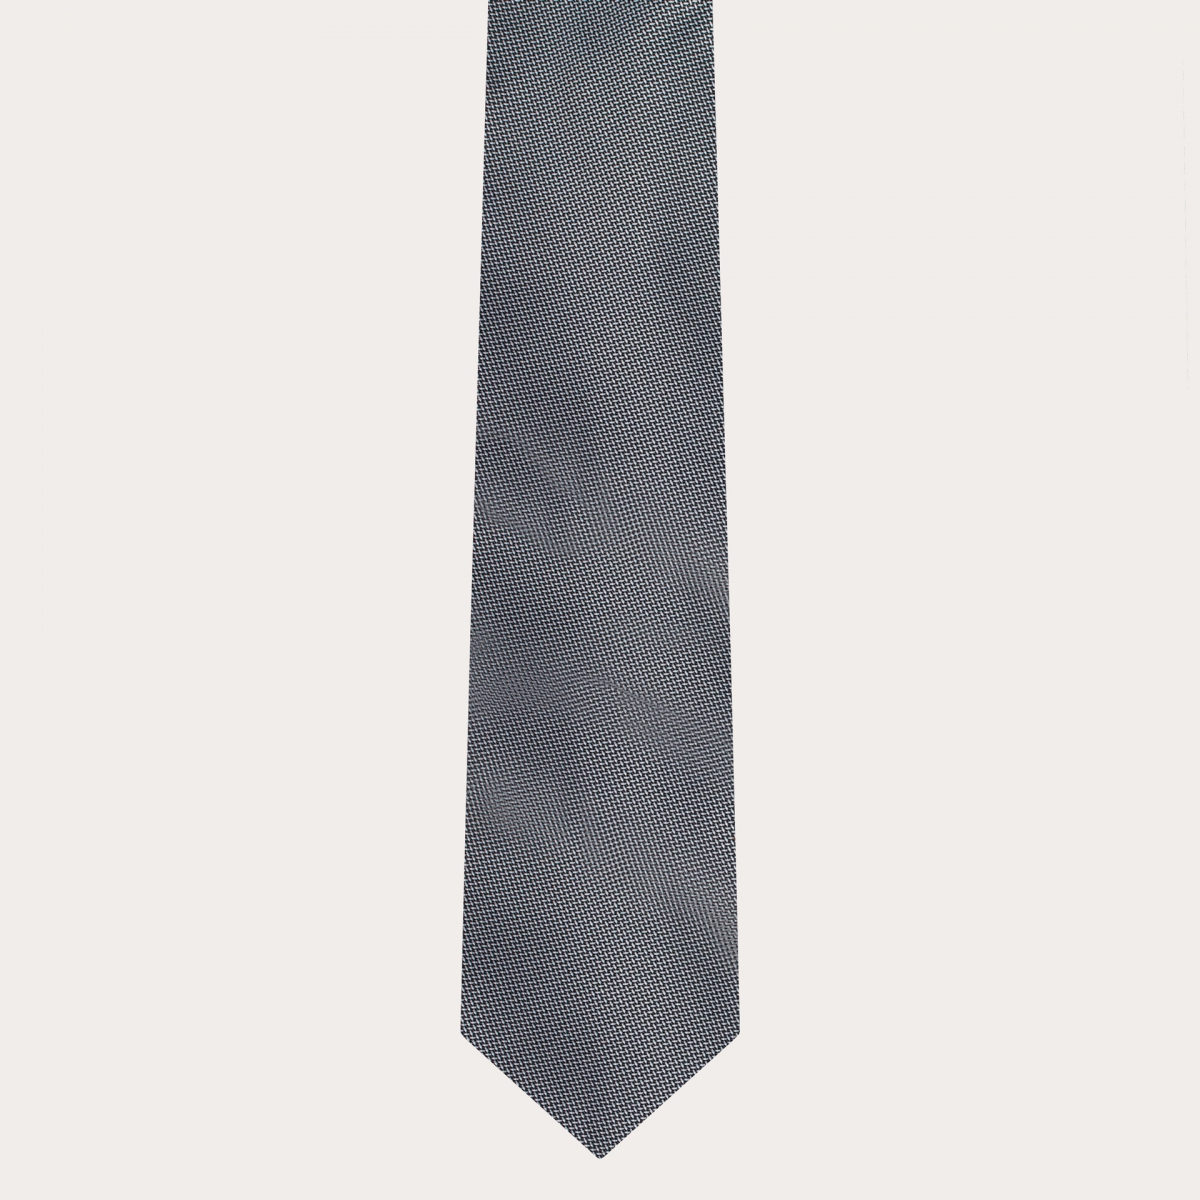 BRUCLE Abgestimmtes Set aus Hosenträgern und Krawatte aus eleganter grauer gepunkteter Seide